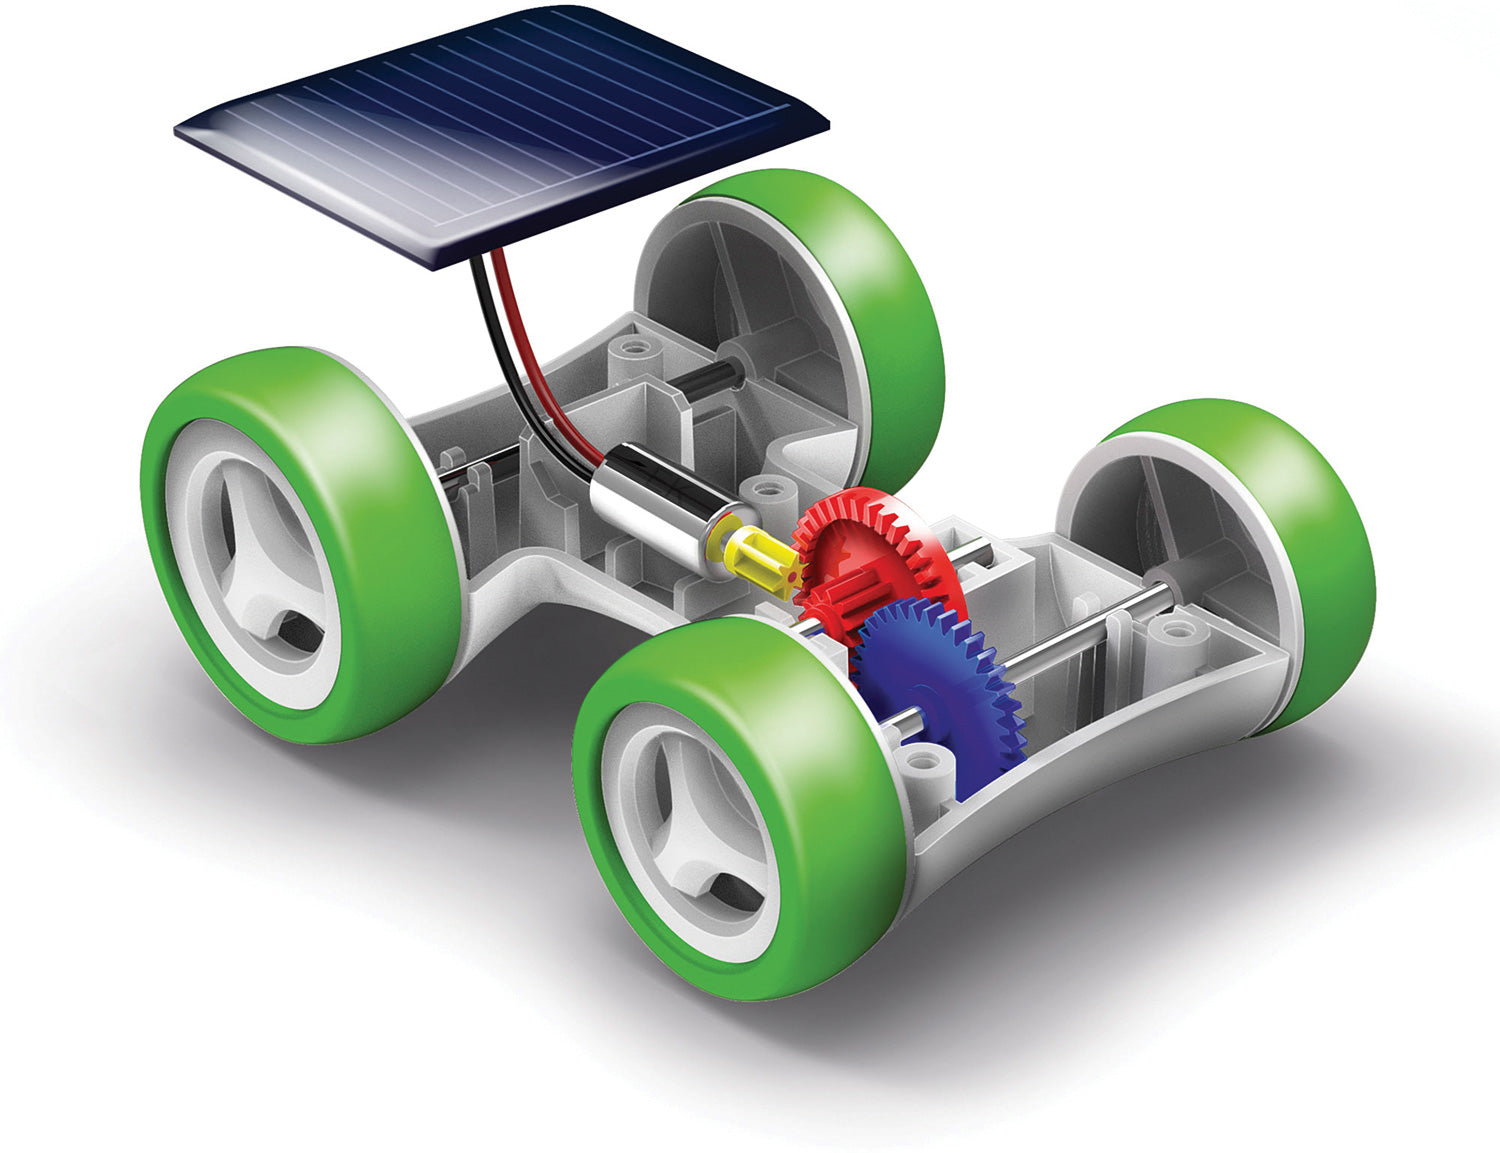 Solar Race Car Kit